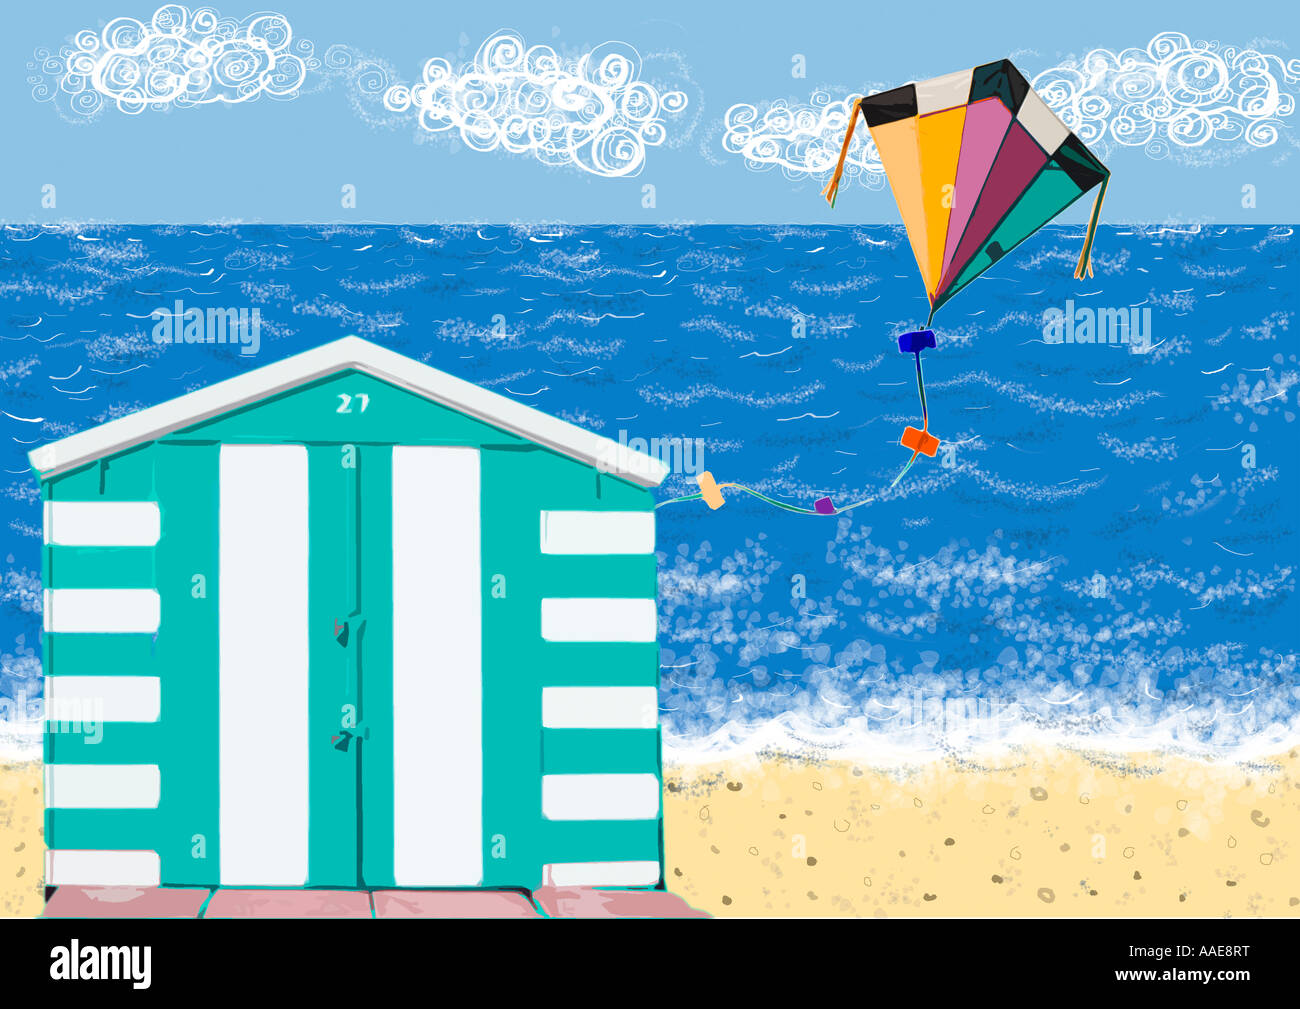 Estate illustrazione balneare con spiaggia striata beach hut e battenti kite per bambini Foto Stock